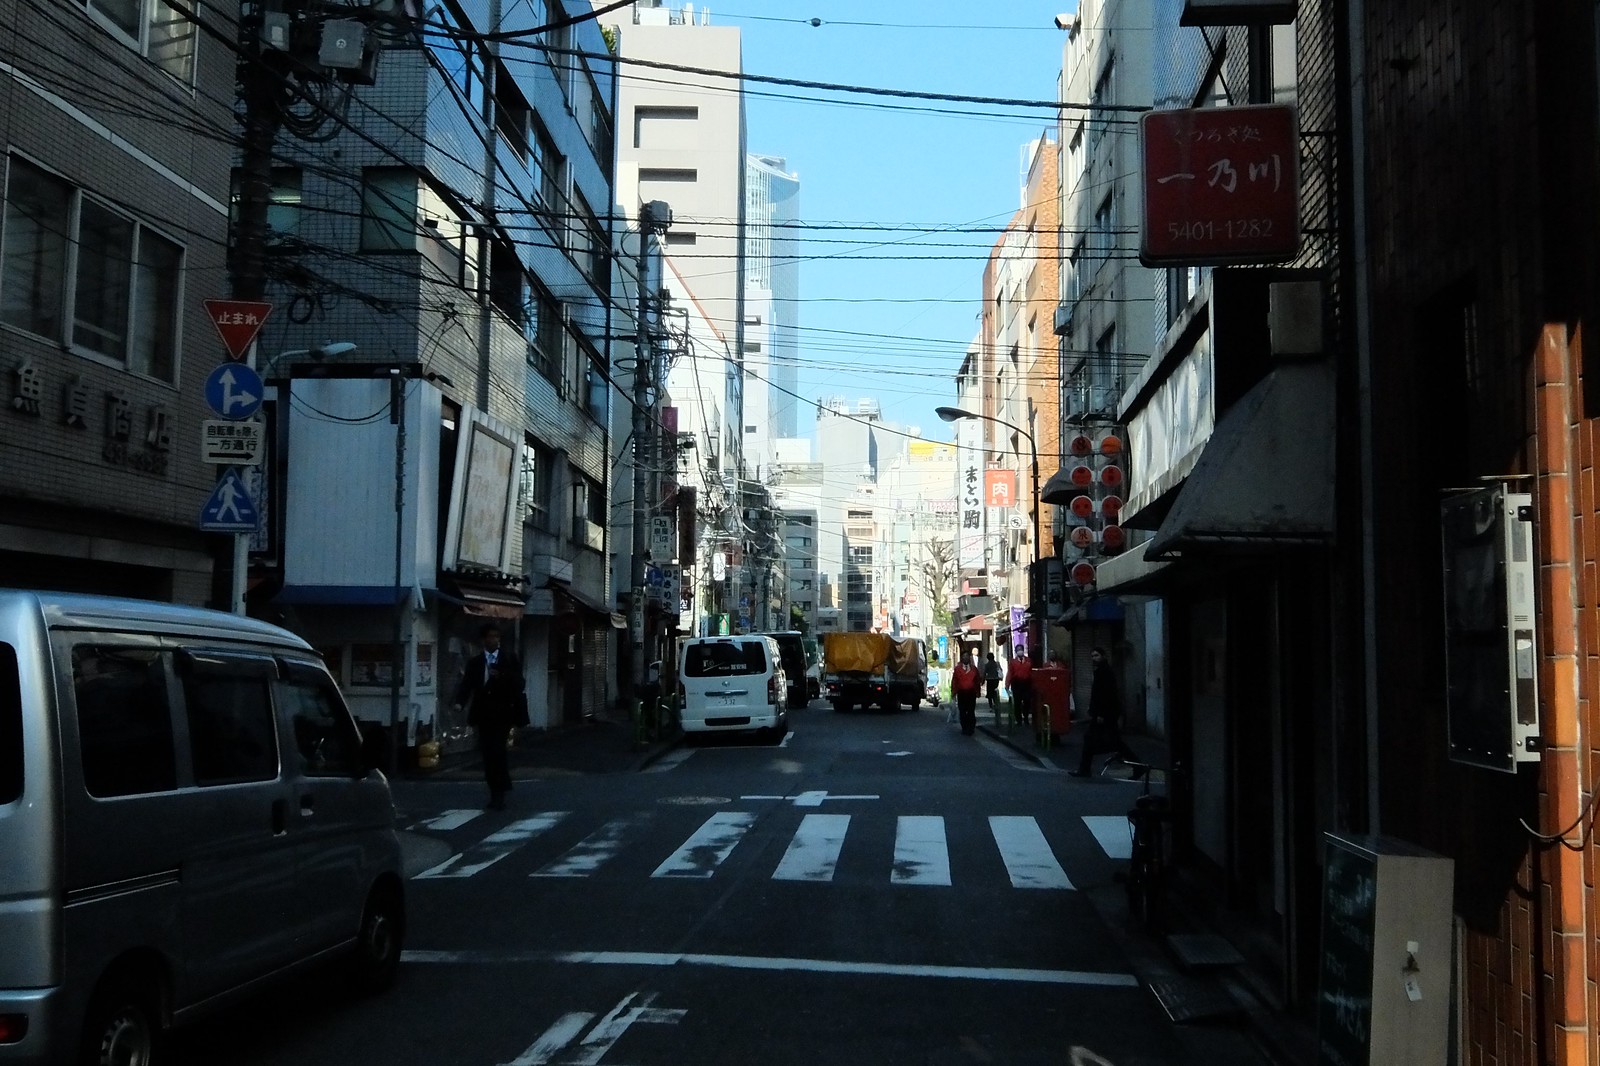 The Shinbashi Tokyo taken by FUJIFILM XQ1